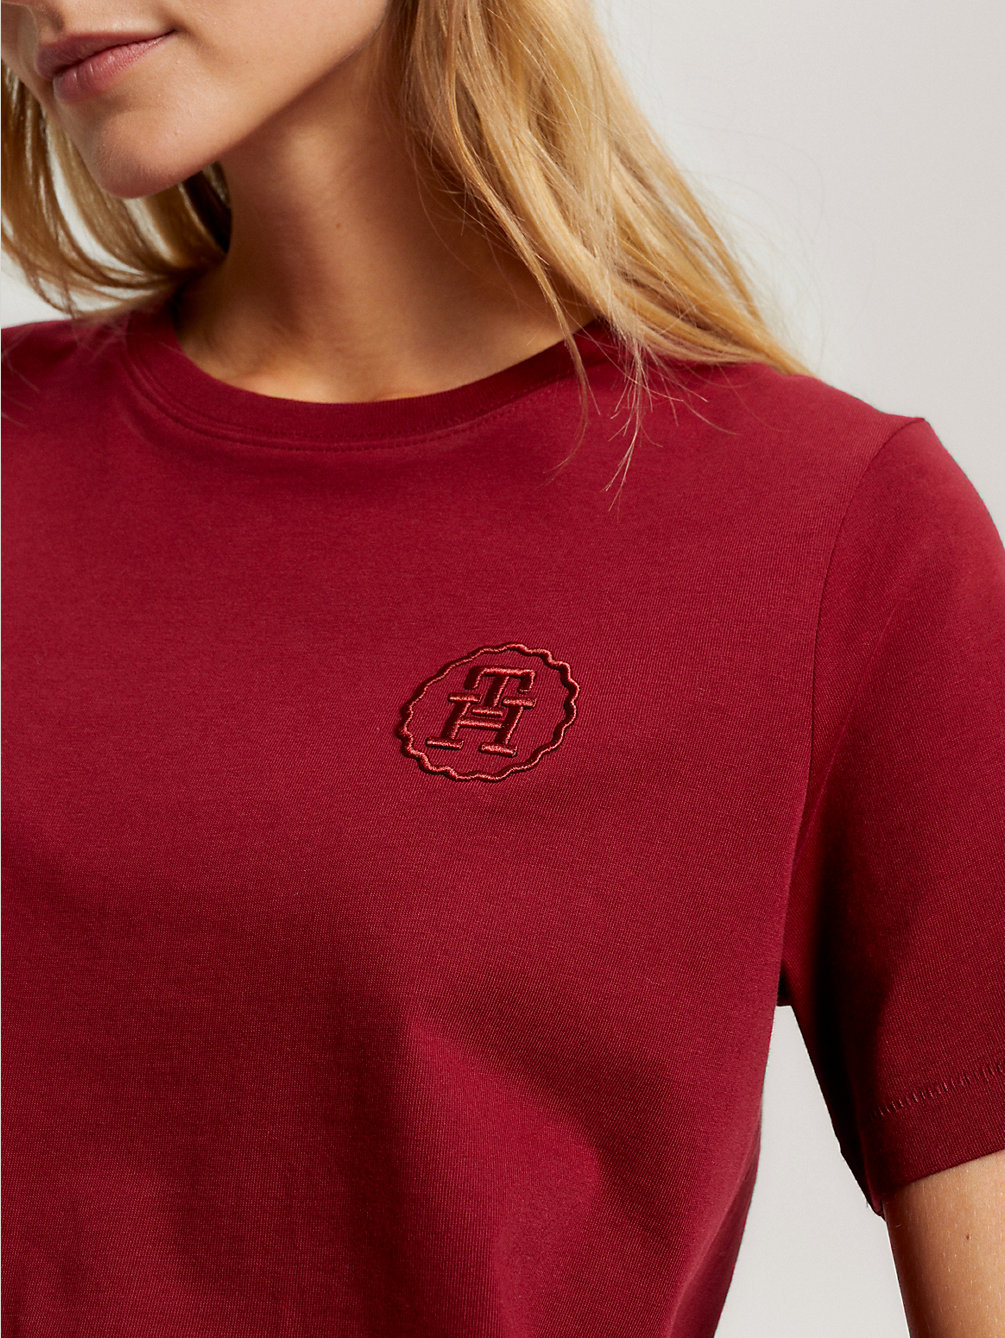 t-shirt modern à logo brodé ton sur ton red pour femmes tommy hilfiger